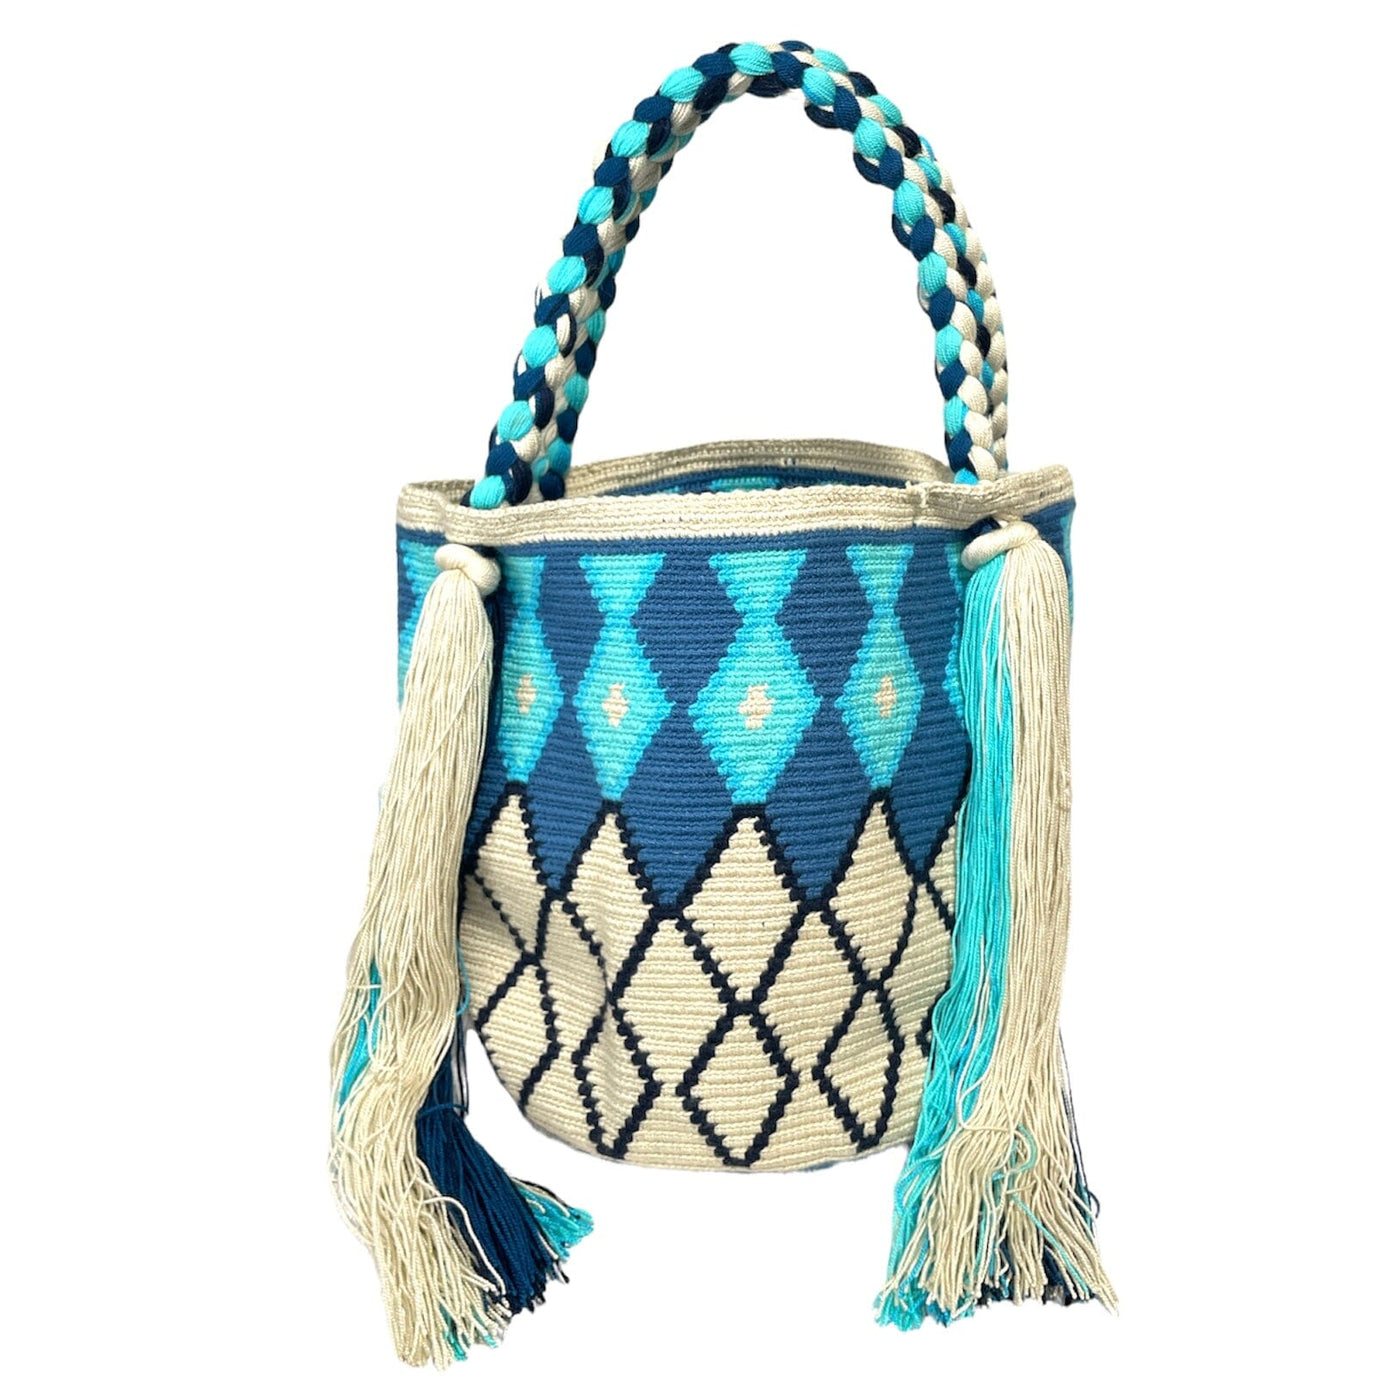 Blue Colorful Tote Bag | Summer Shoulder Bag | Crochet Purse with Tassels